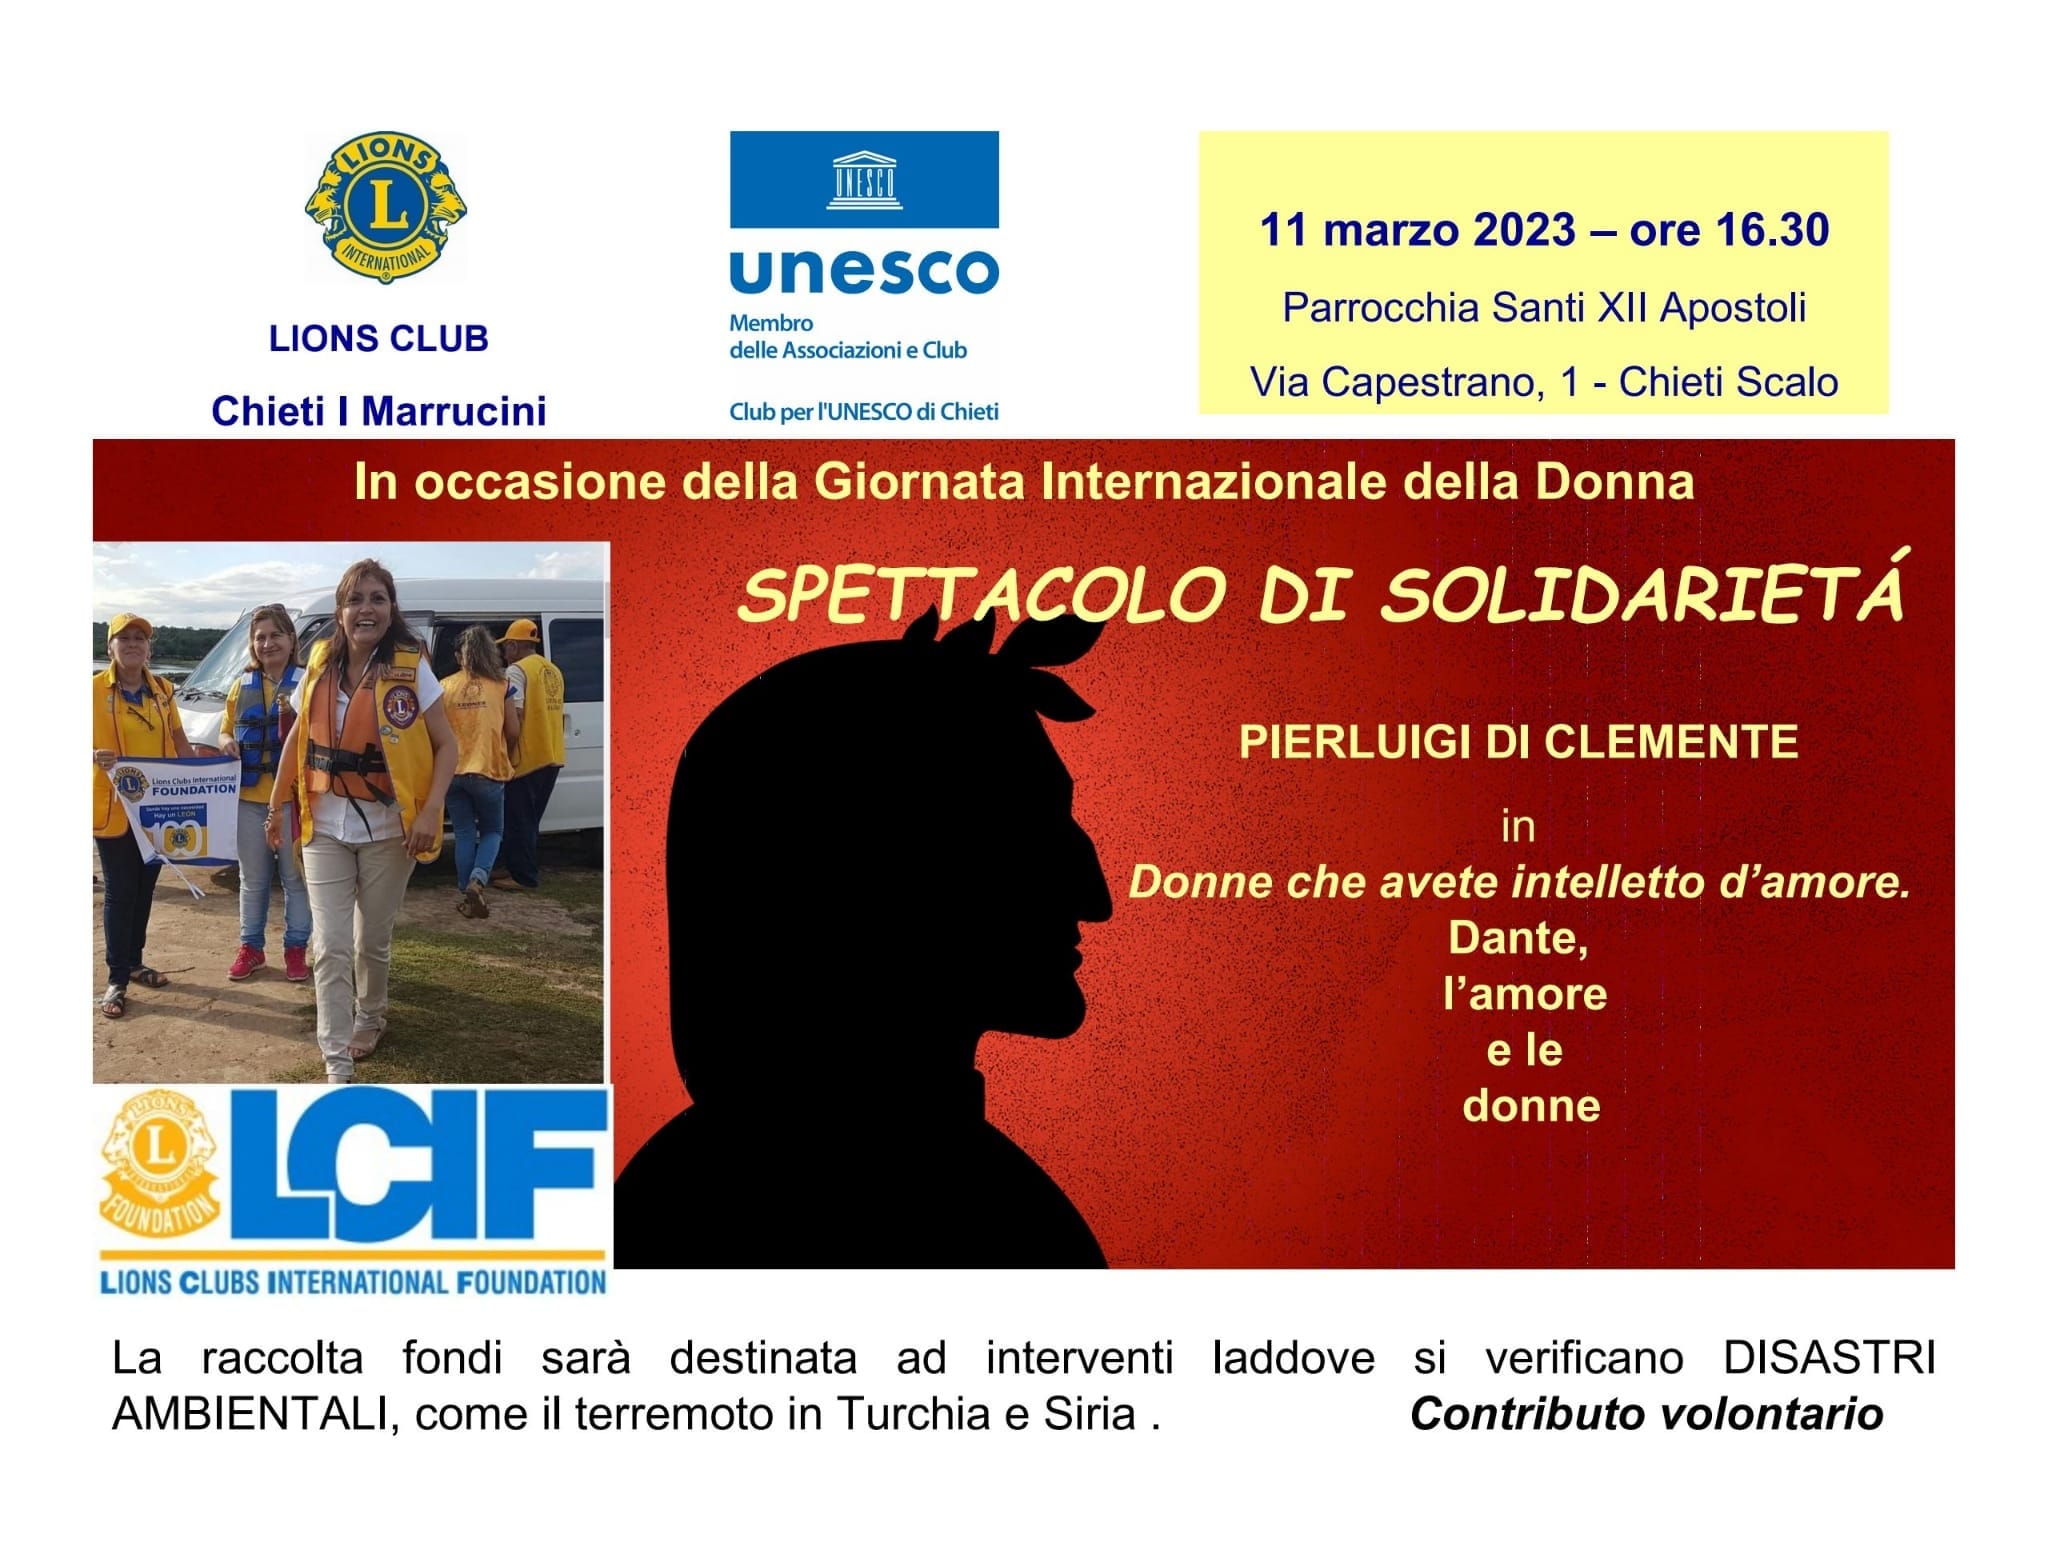 Chieti. Spettacolo di solidarietà del Lions Club “I Maruccini” e Club Unesco